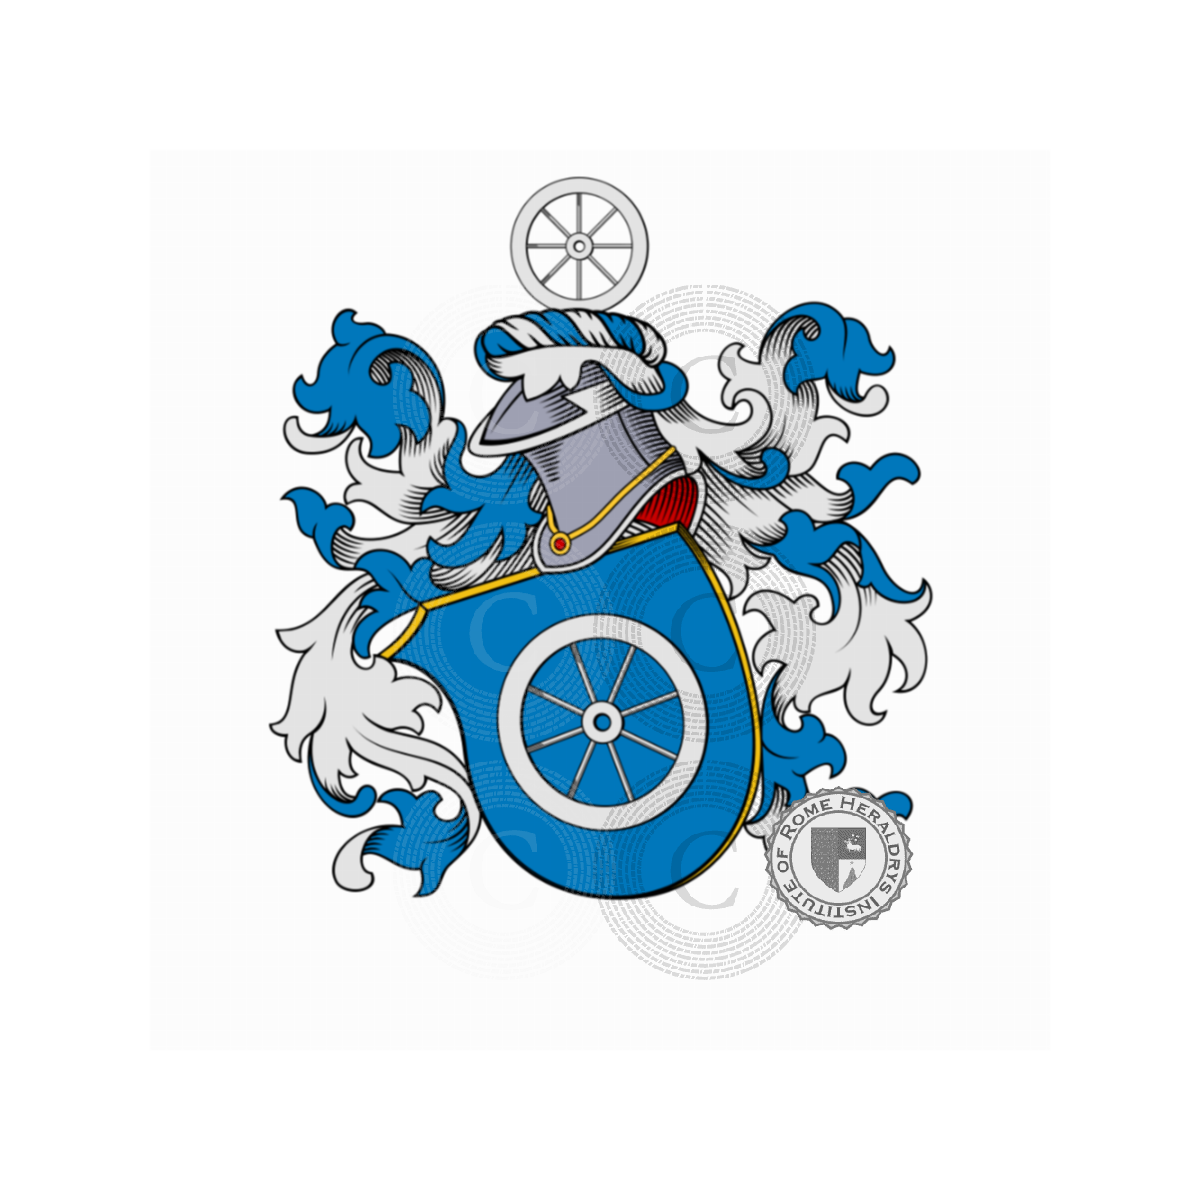 Escudo de la familiaZarbano, Berges Zarbano,Berges-Zarbano